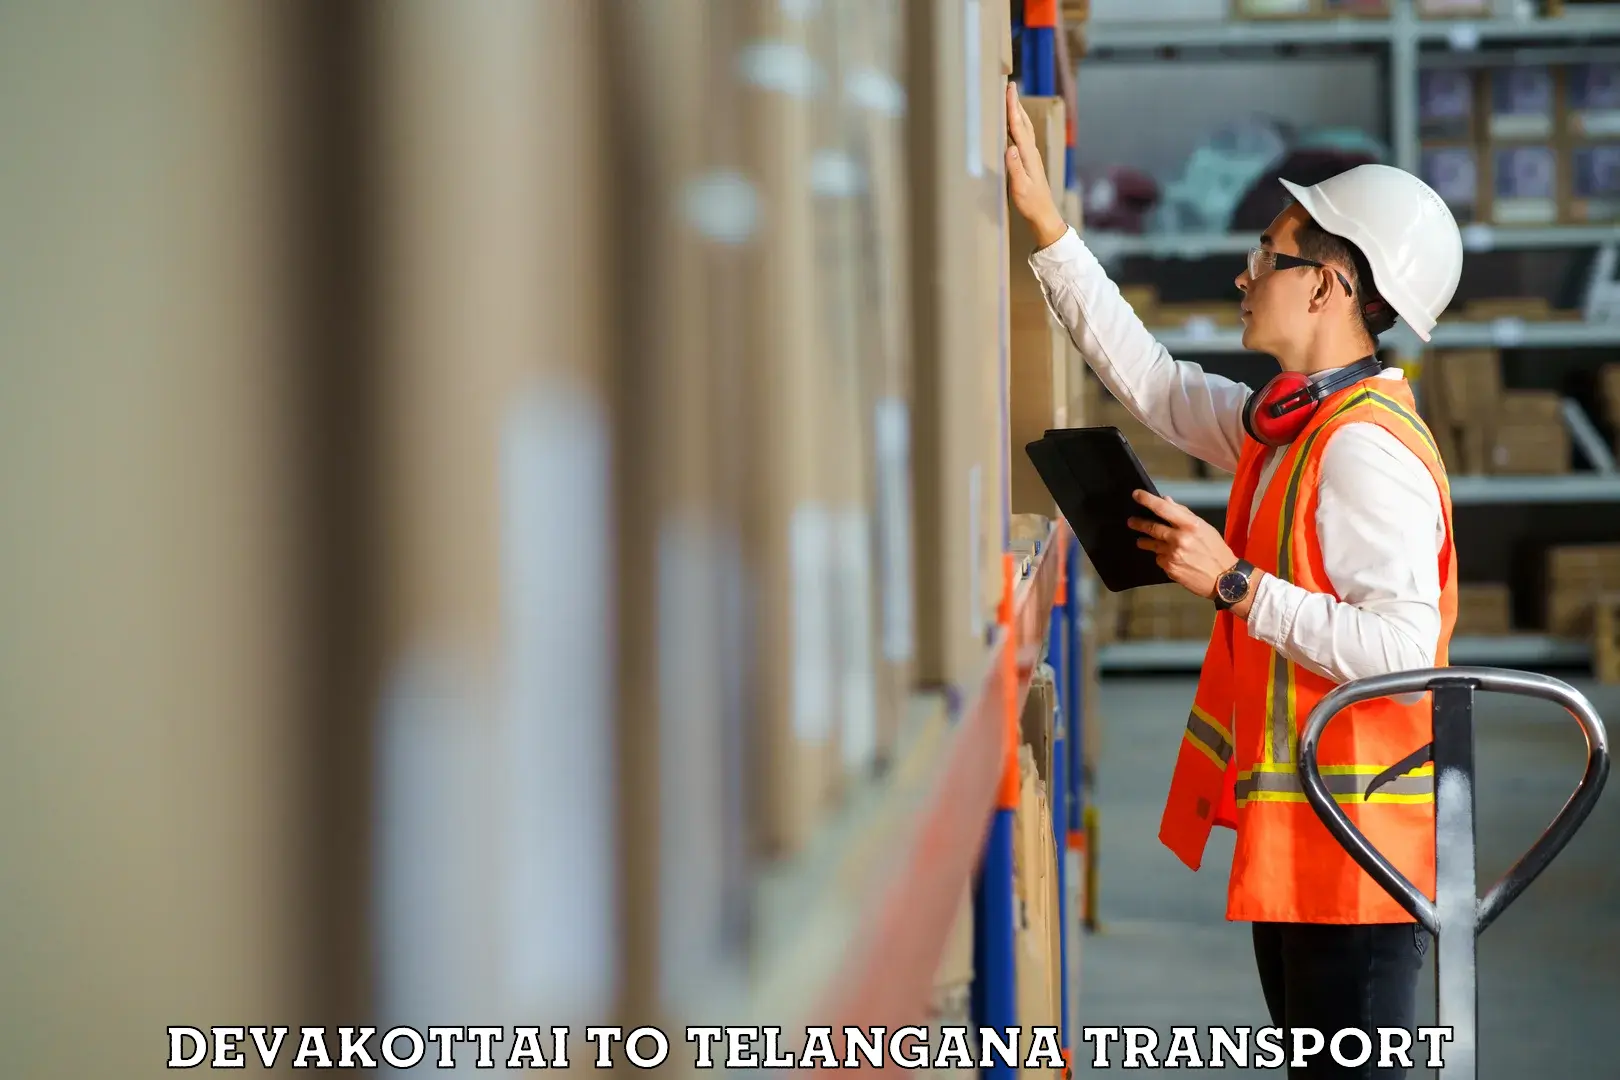 Transport in sharing Devakottai to Telangana